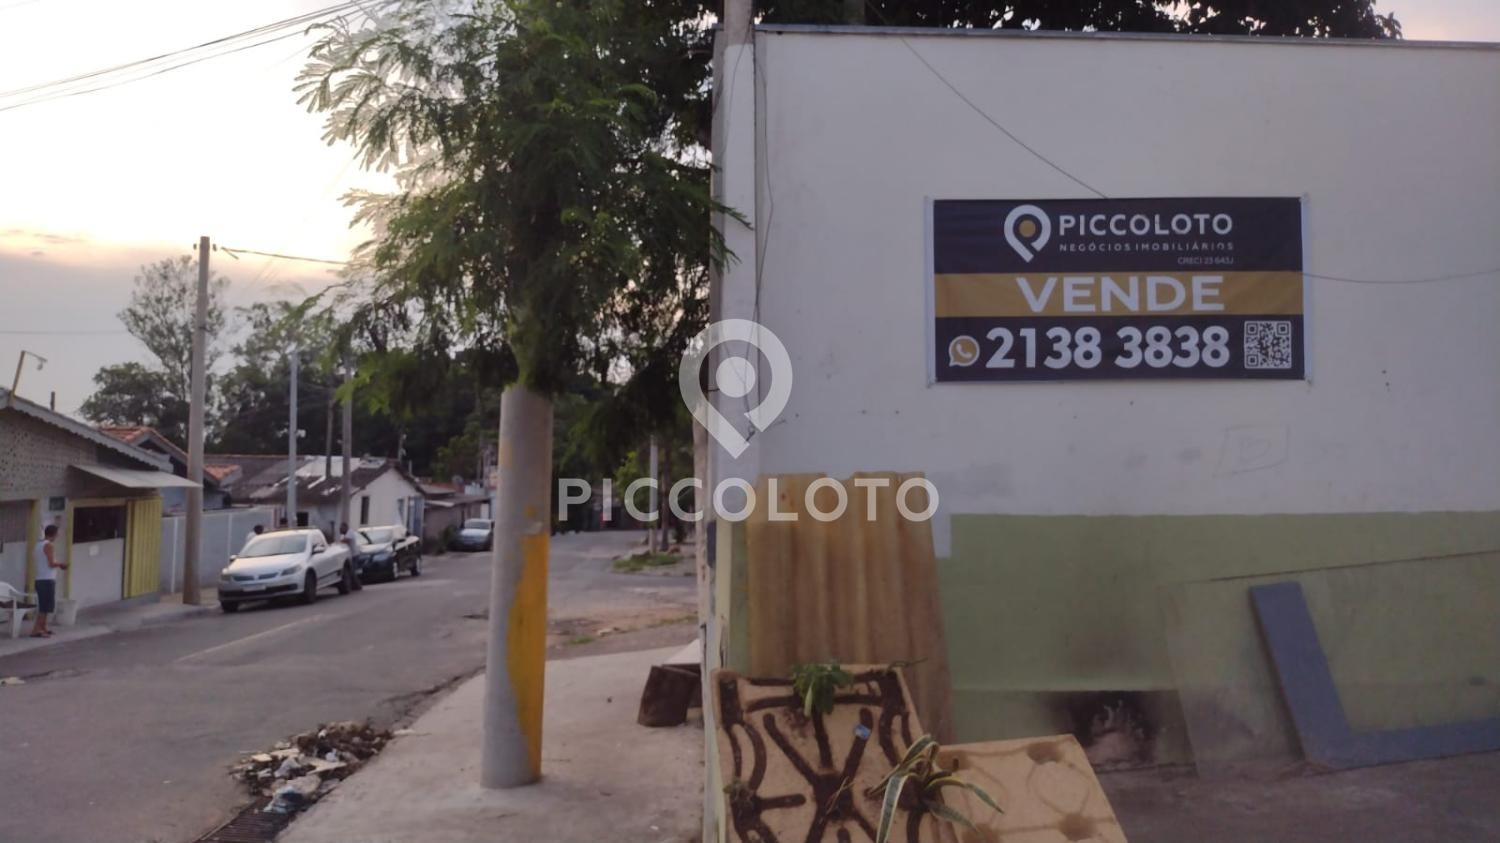 Piccoloto -Galpão à venda no Jardim das Bandeiras em Campinas